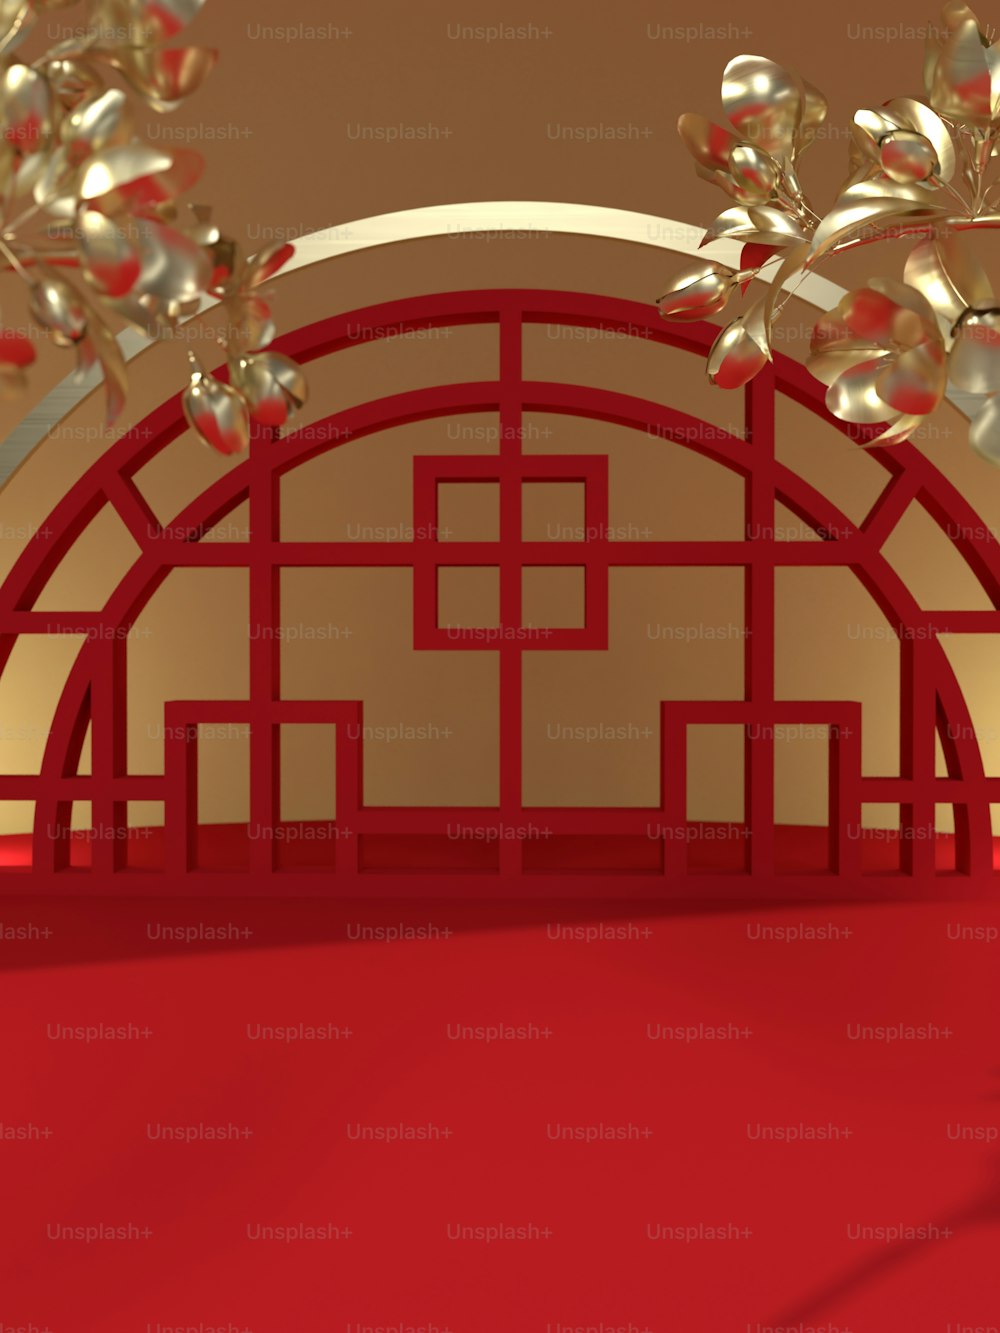 赤い絨毯と赤い壁のある赤い部屋